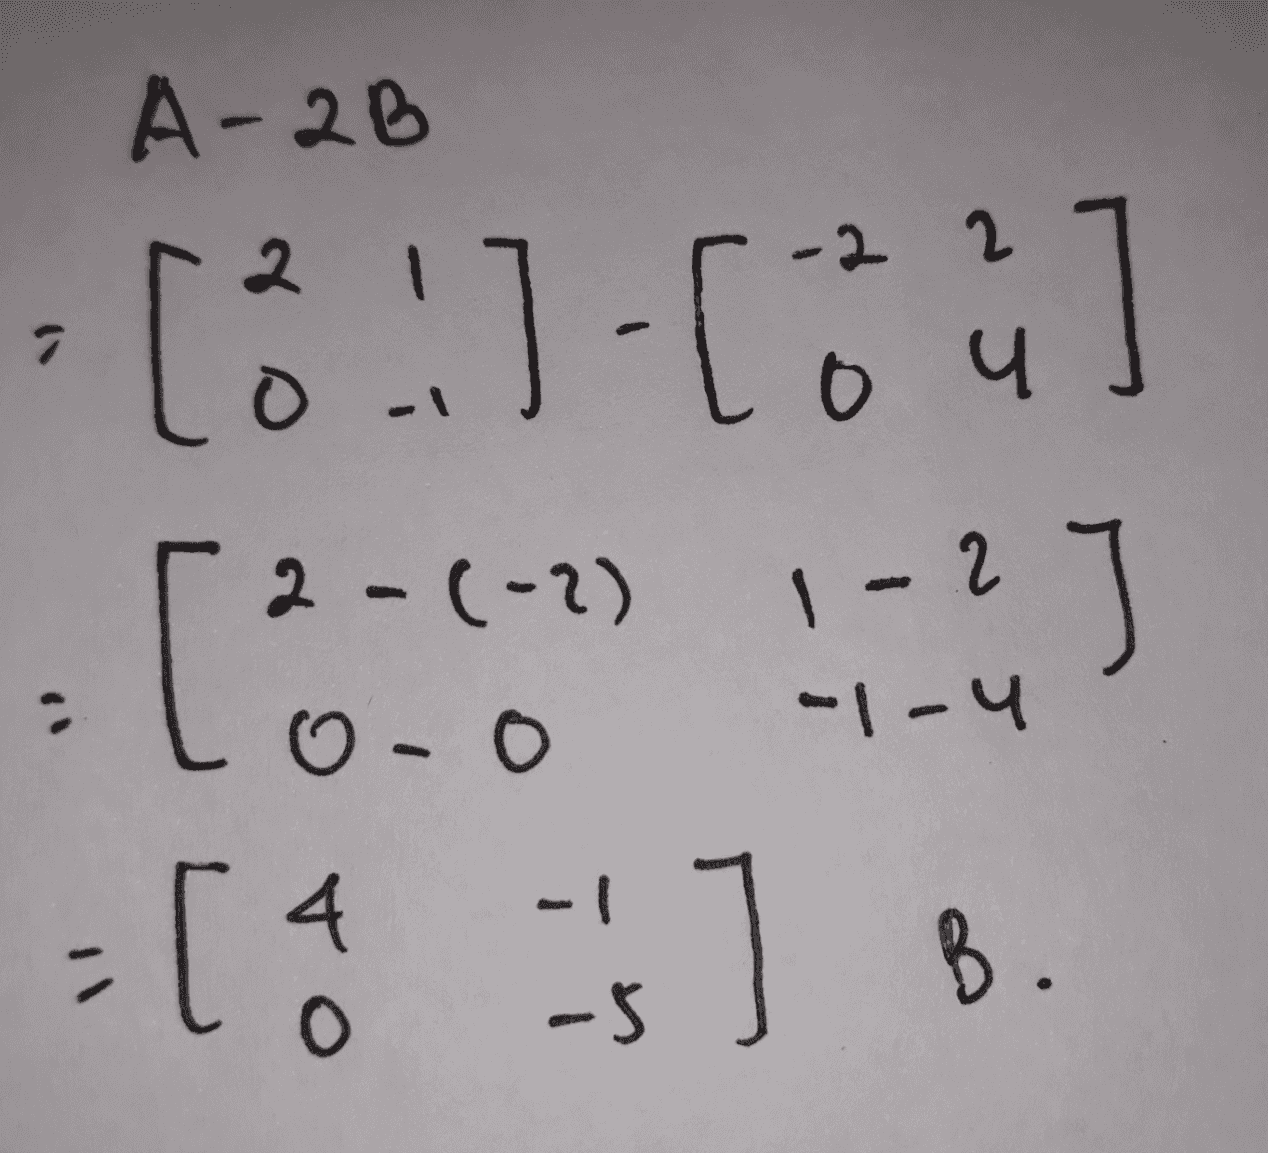 A-2B [3] [4] 2-(-2) 1-2 ] - [6 is ] B [ 2 O-O -1-4 B. 